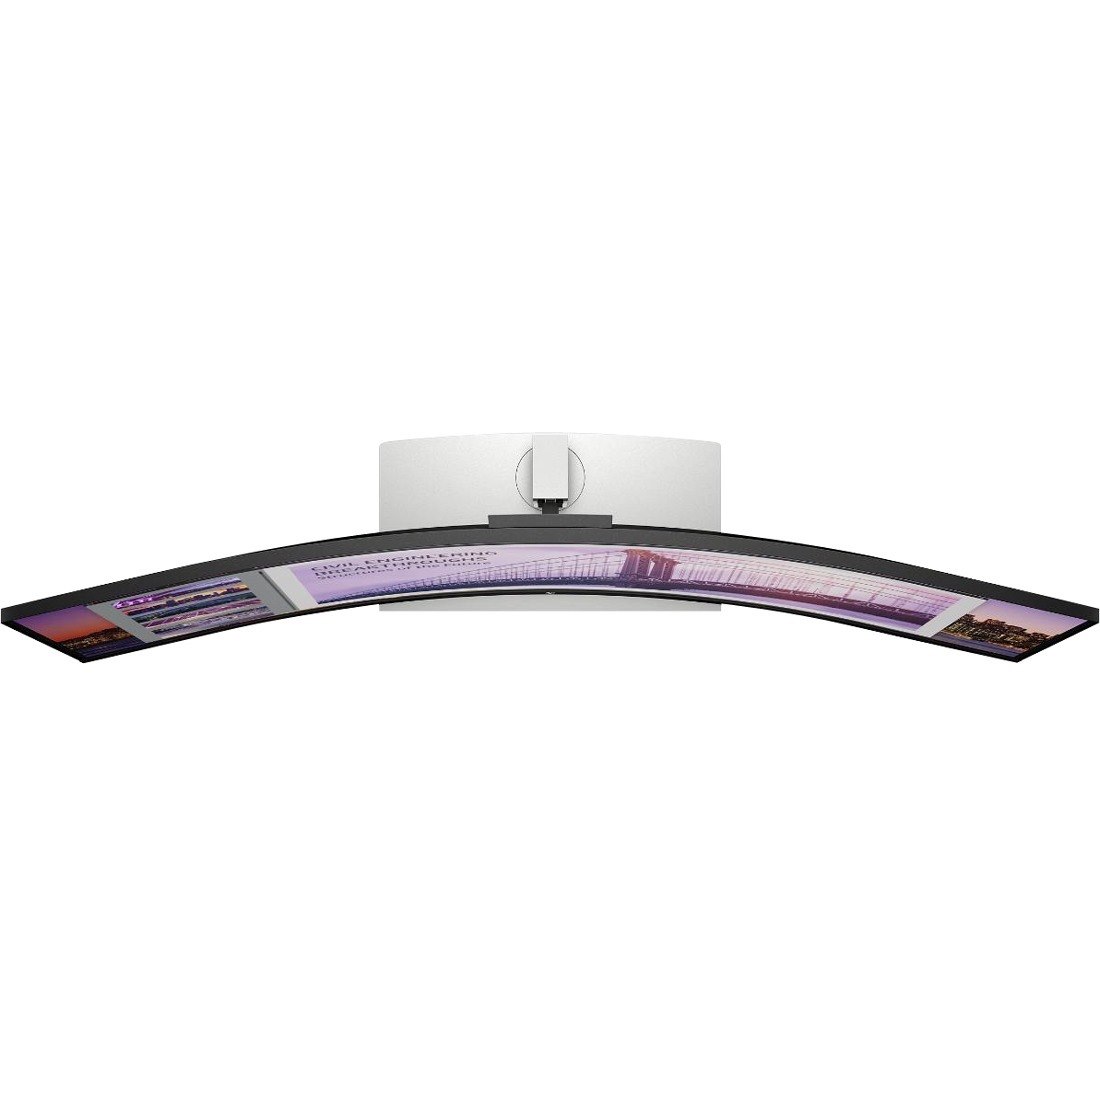 HP Ultrawide S430c 43.4" Webcam 4K UHD Curved Screen LED LCD Monitor - 32:10 - Black